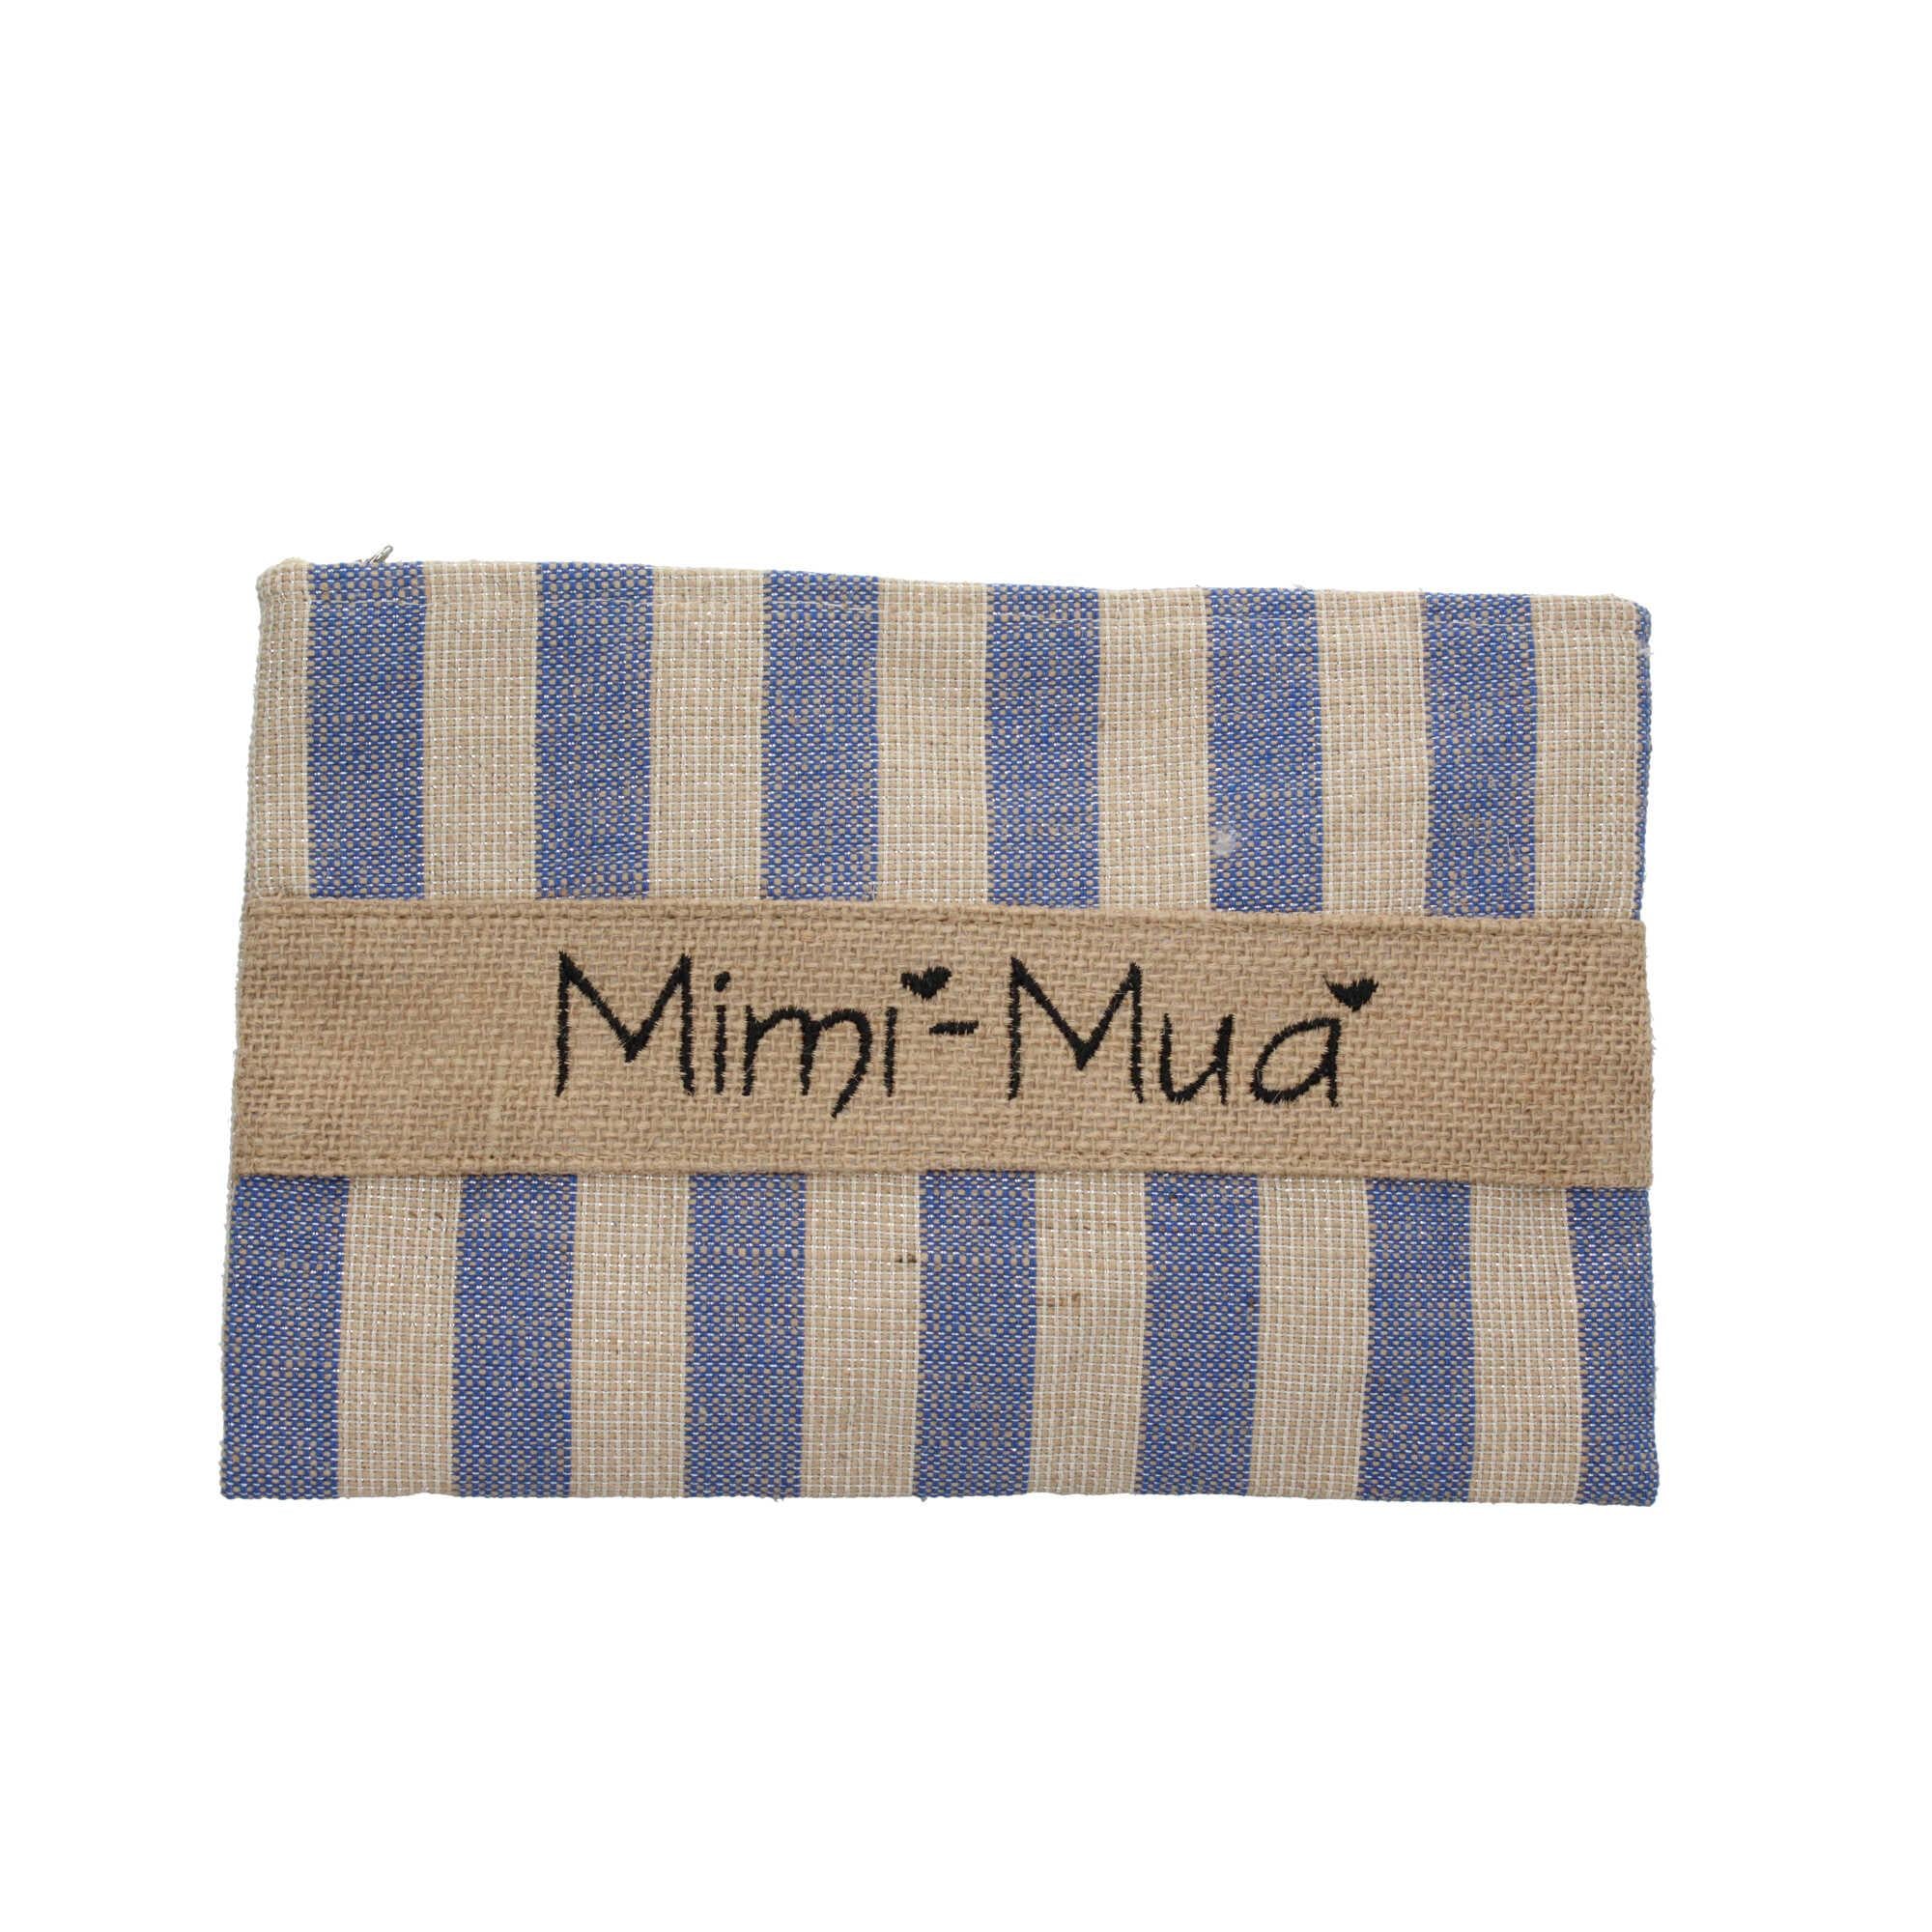 Pochette con chiusura zip Mimi-Mua